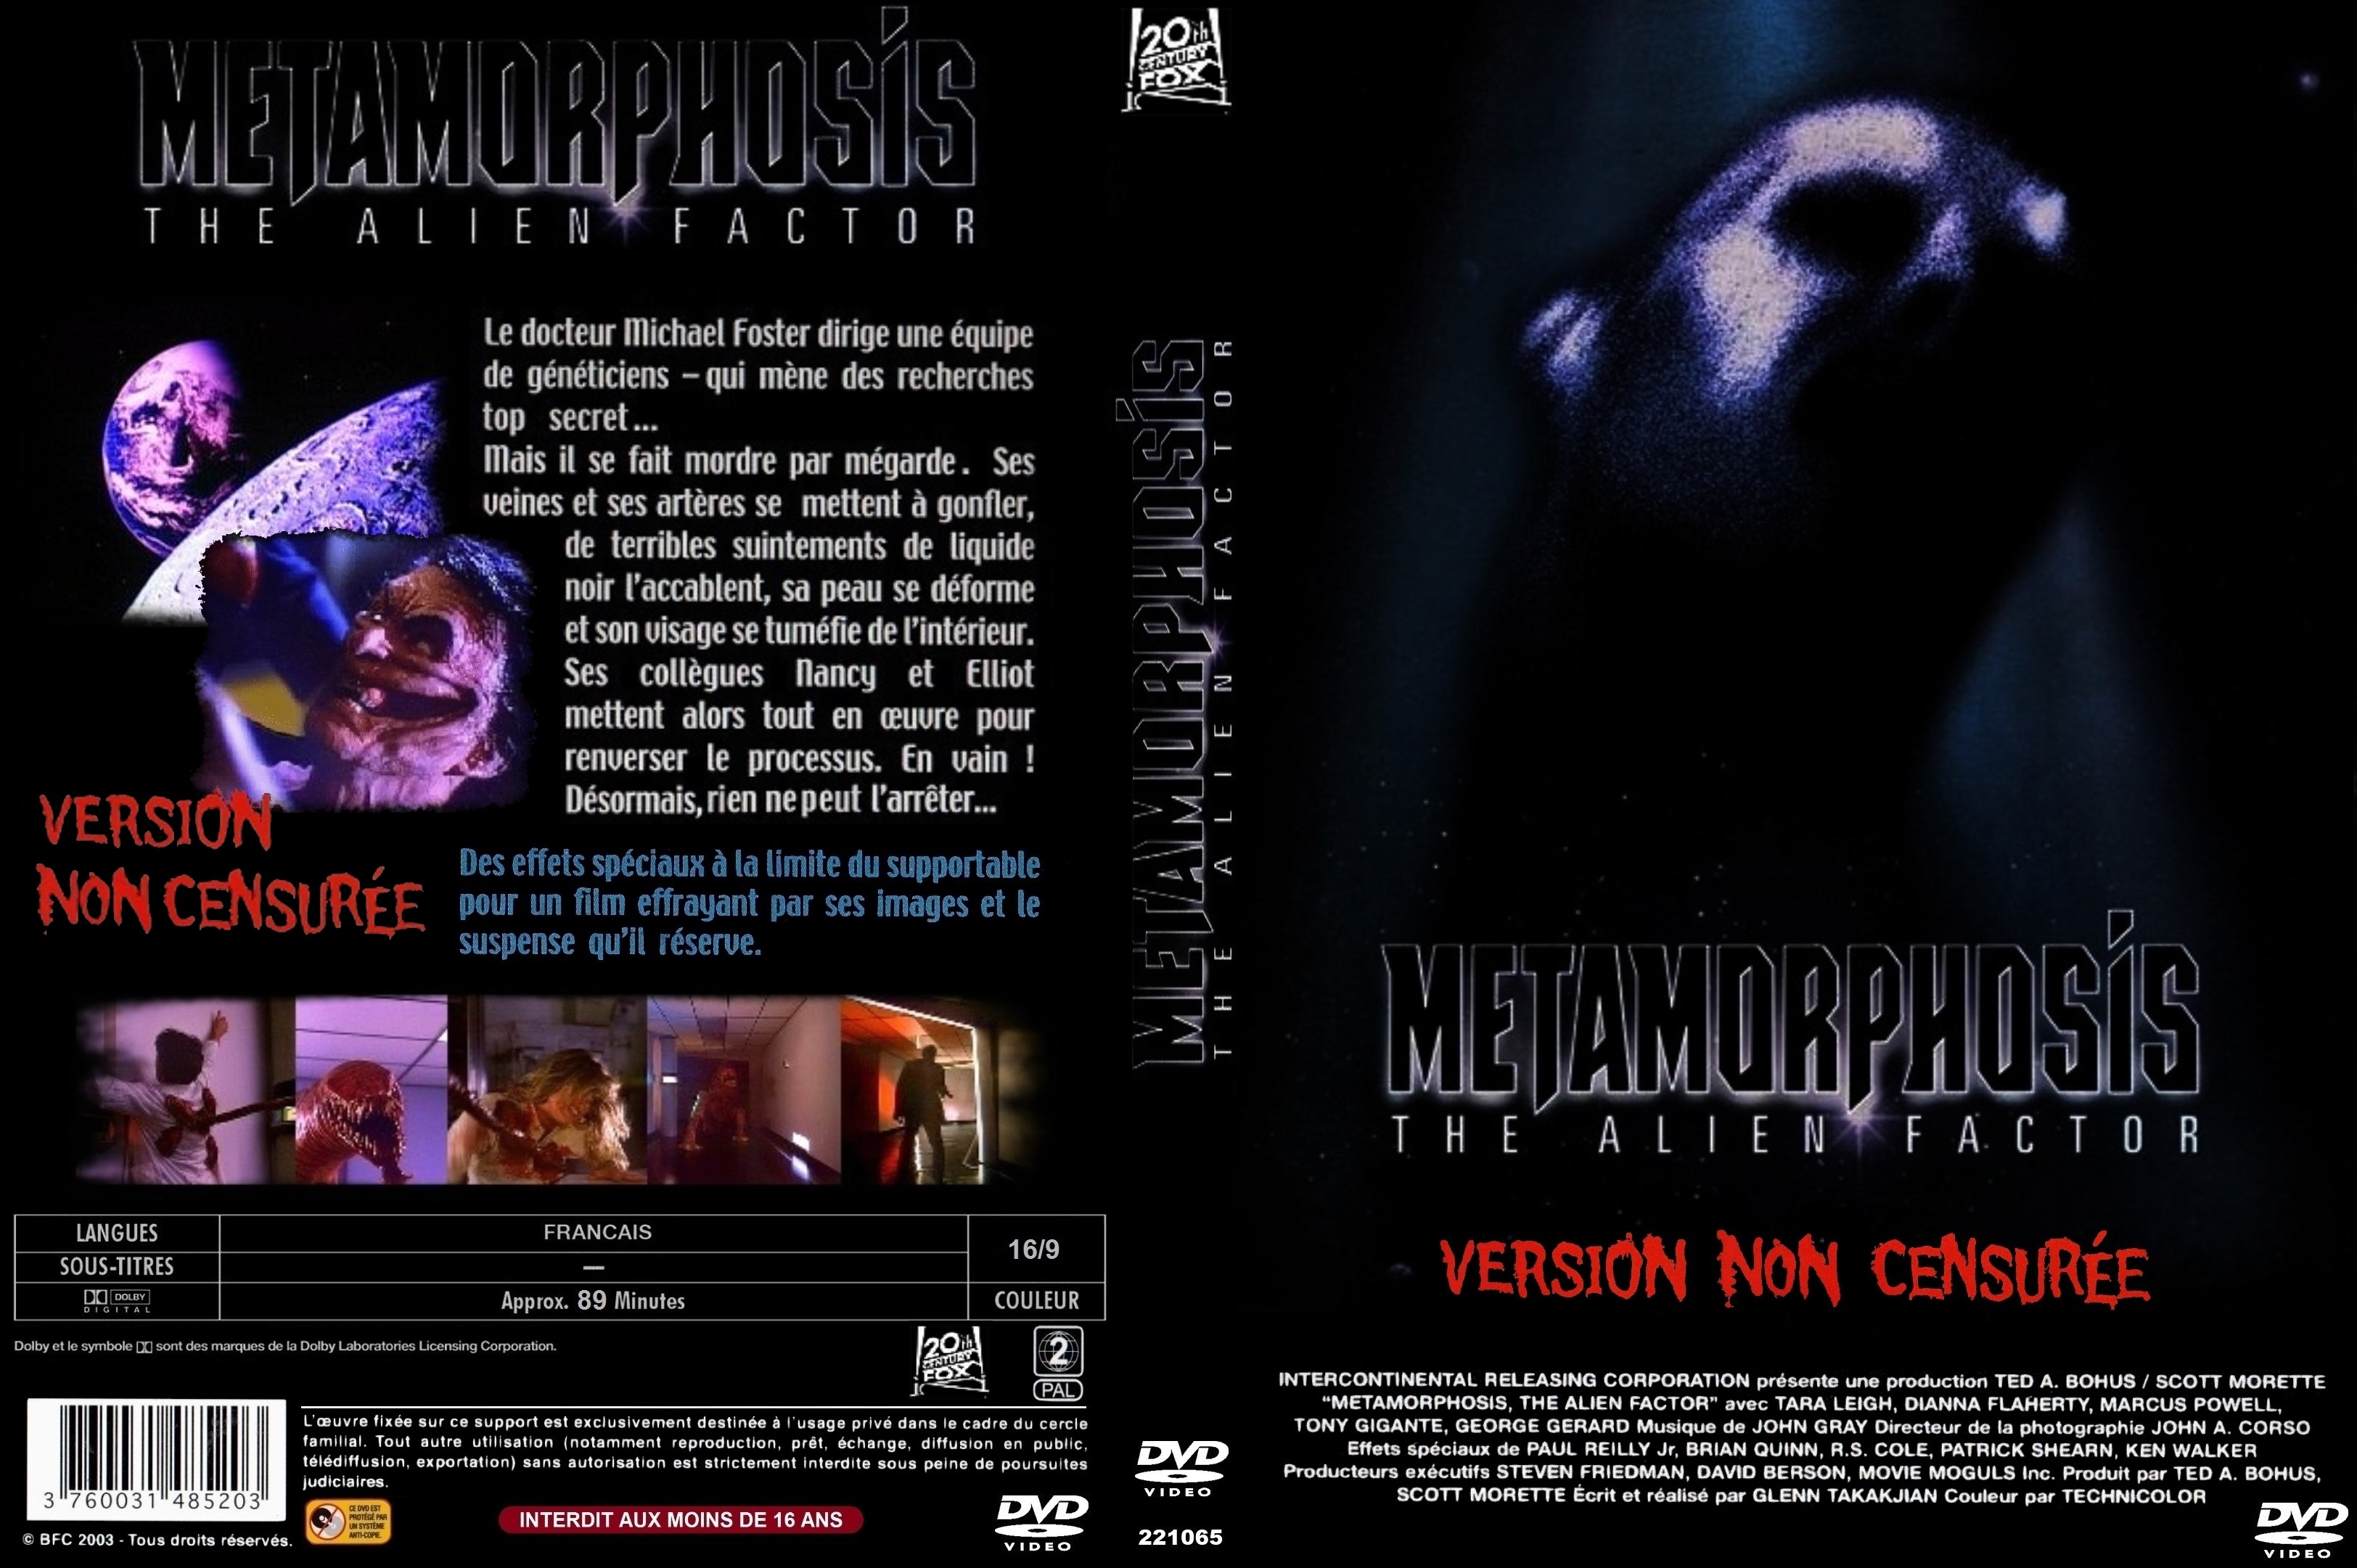 Jaquette DVD Metamorphosis custom